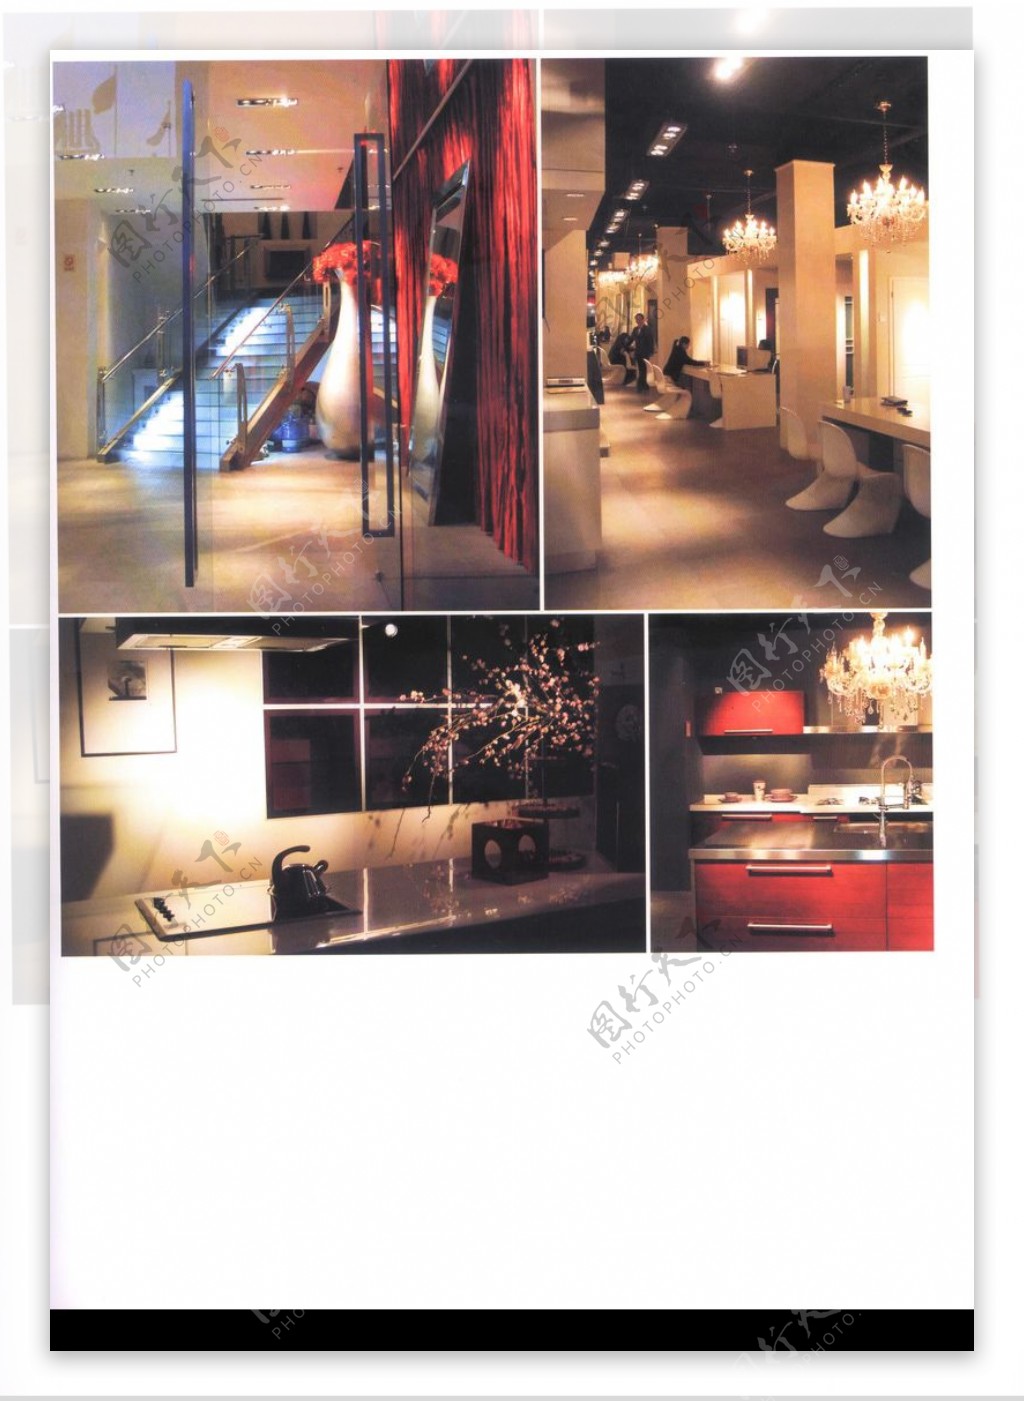 亚太室内设计年鉴2007商业展览展示0274